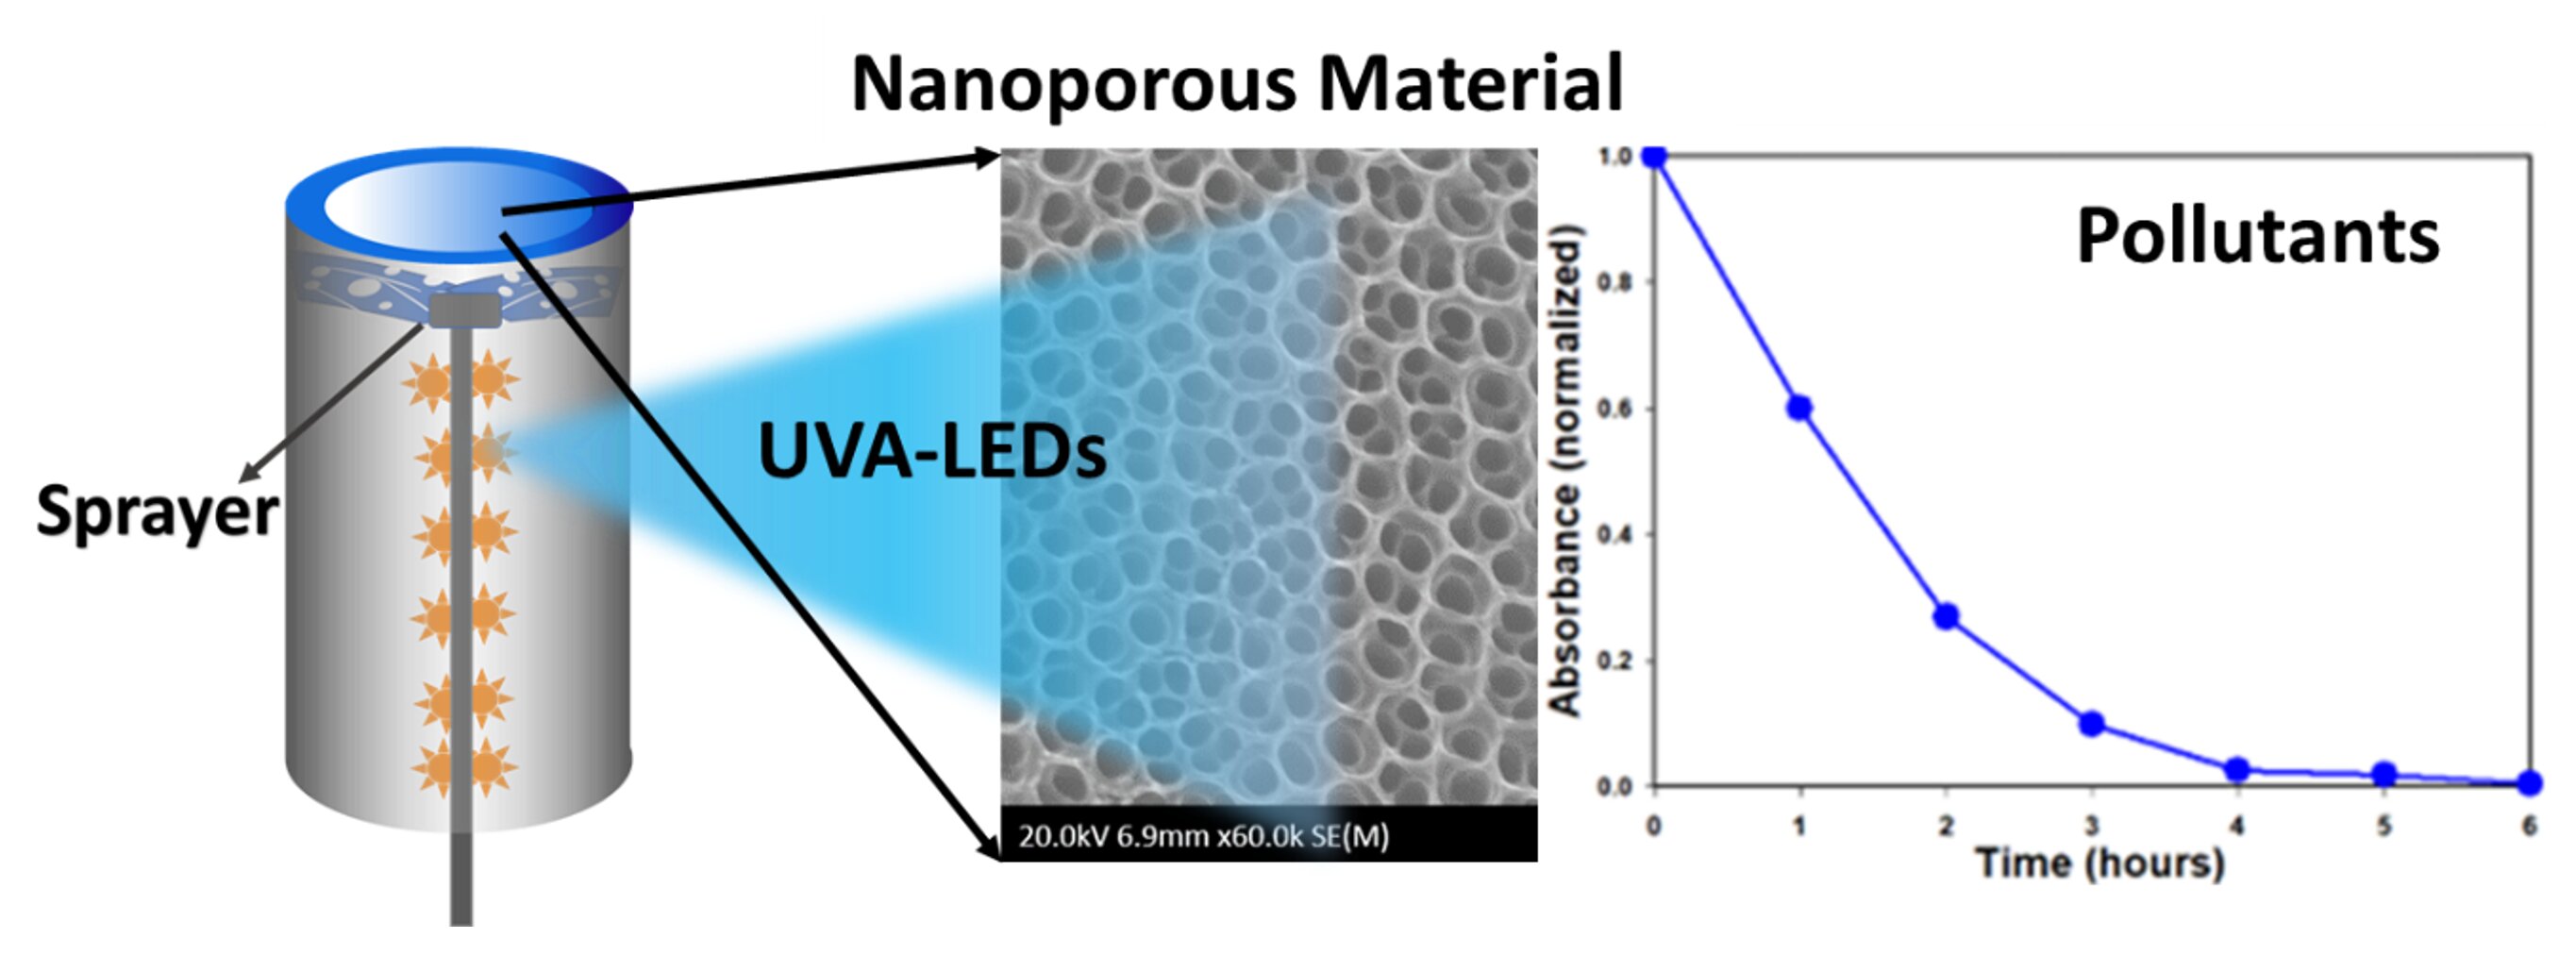 Des chercheurs construisent un système photocatalytique très efficace basé sur des nanomatériaux de dioxyde de titane